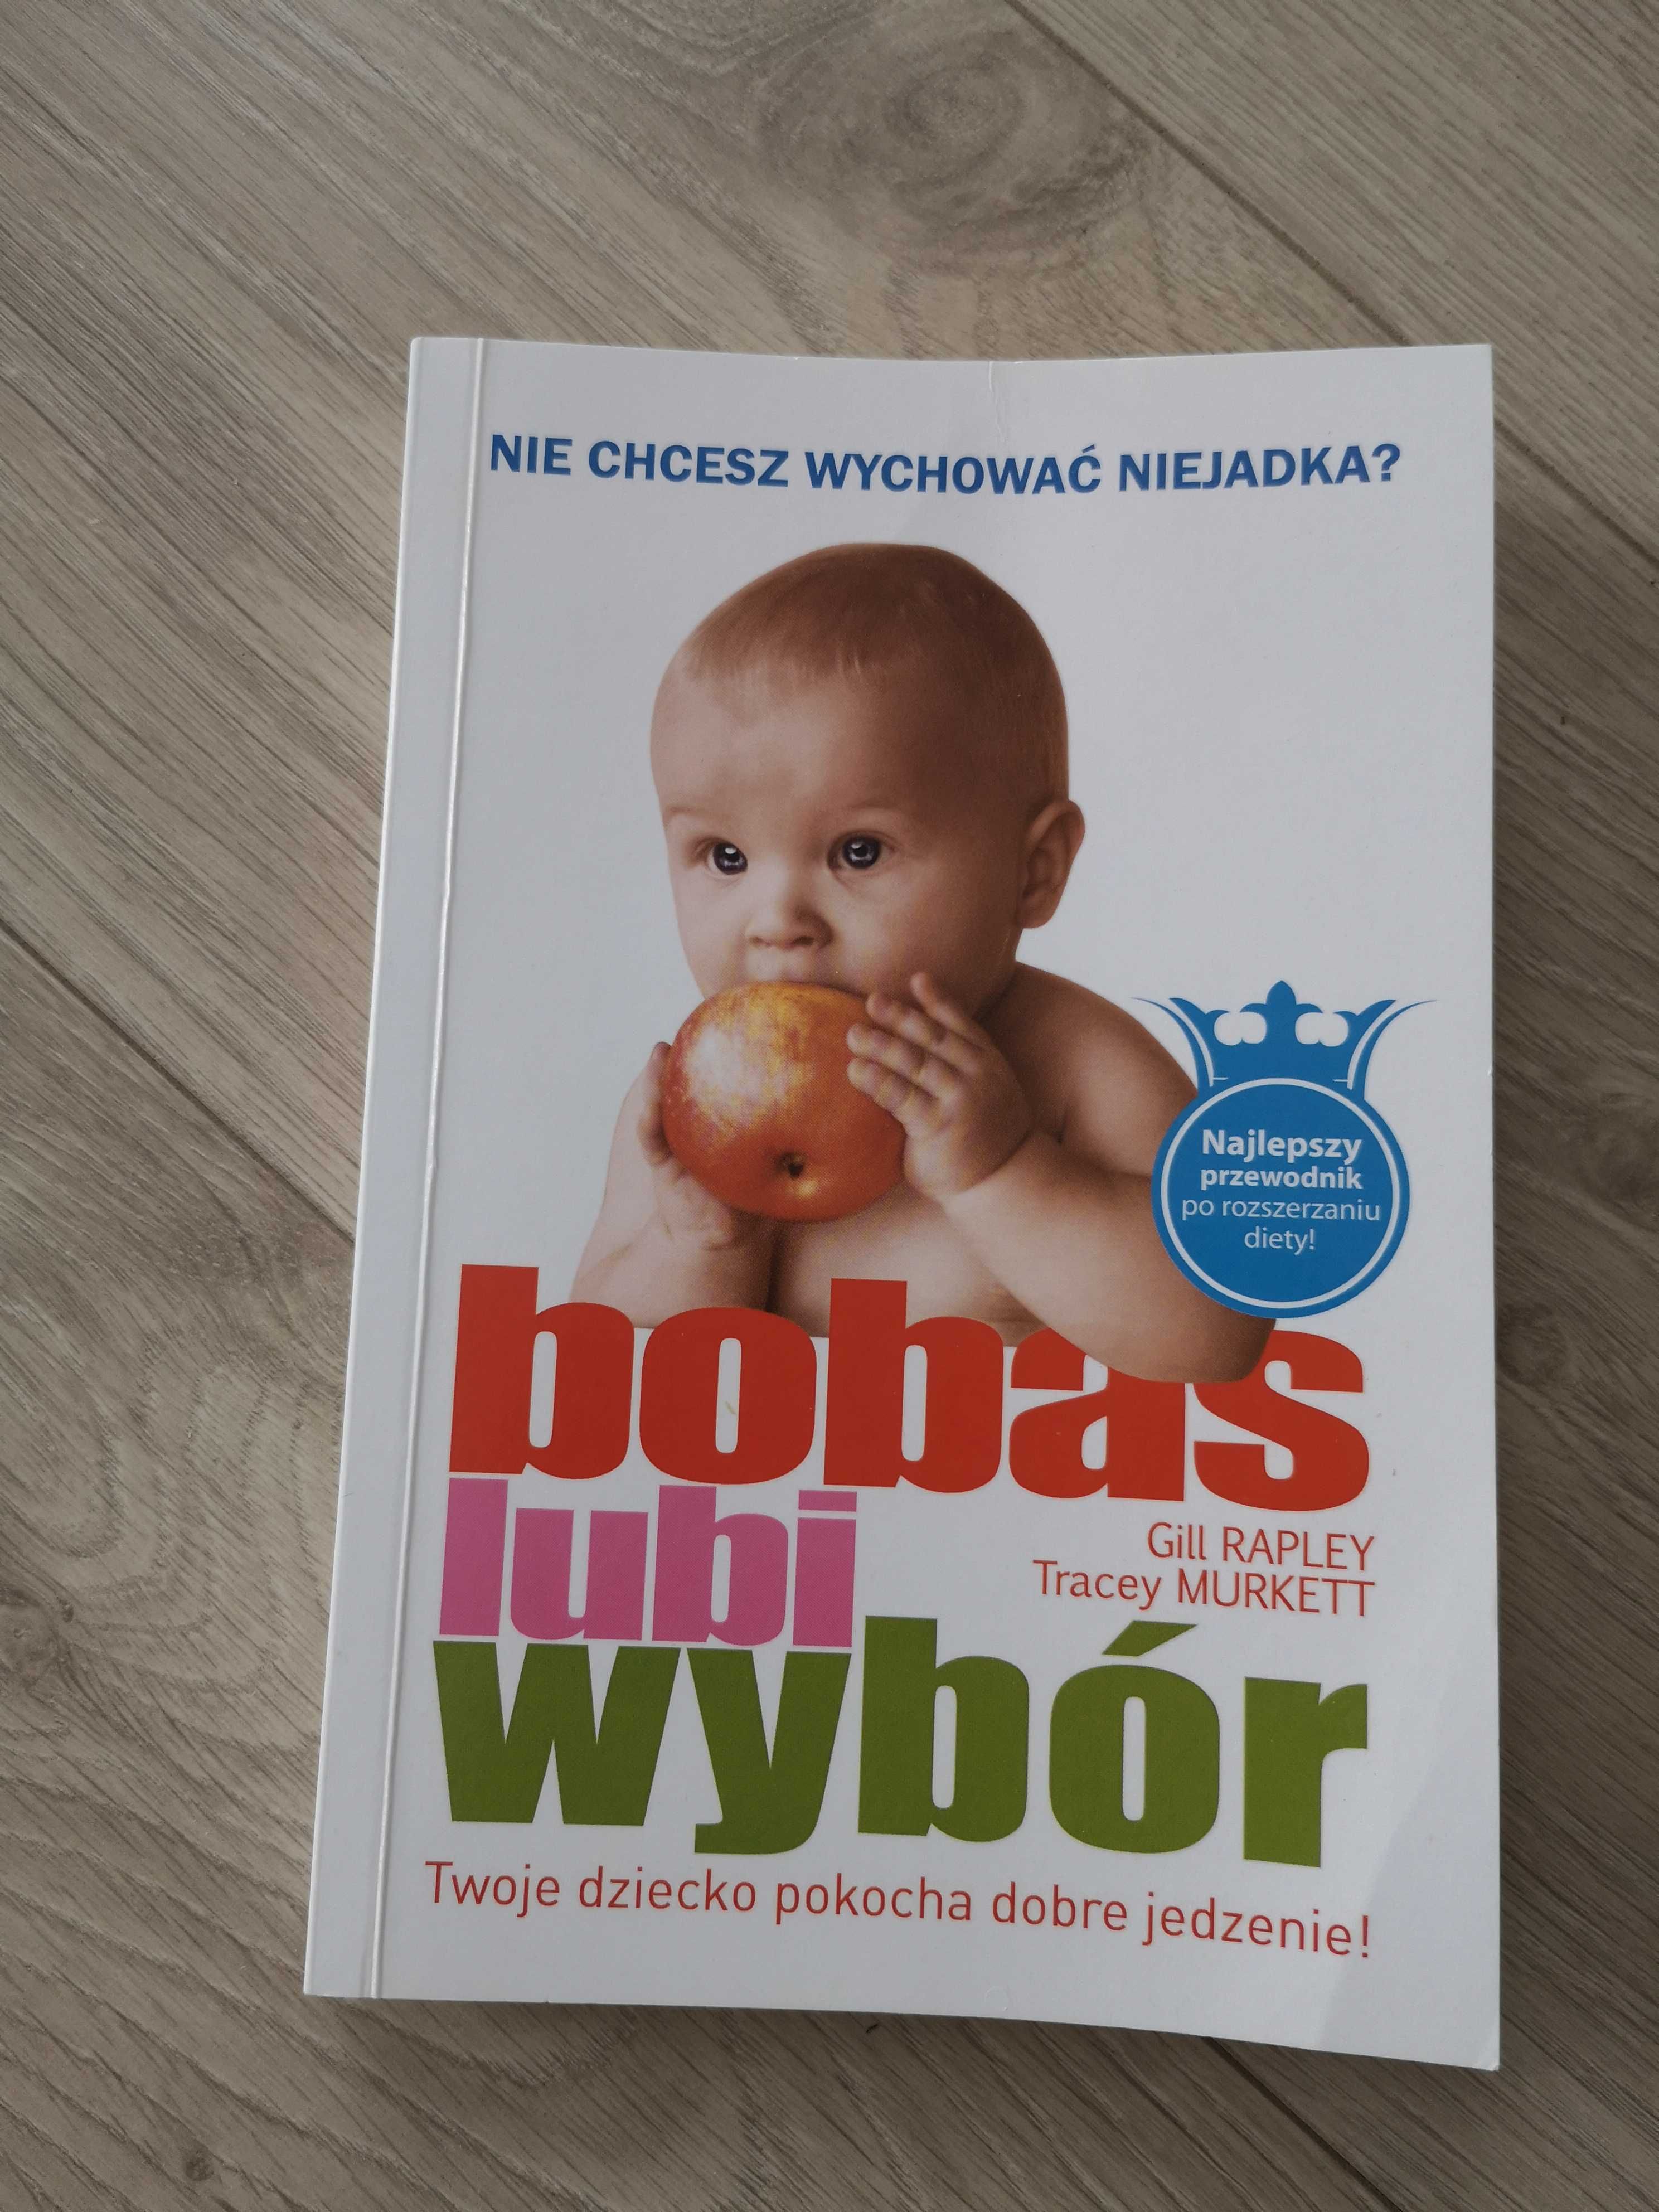 Książka Bobas lubi wybór